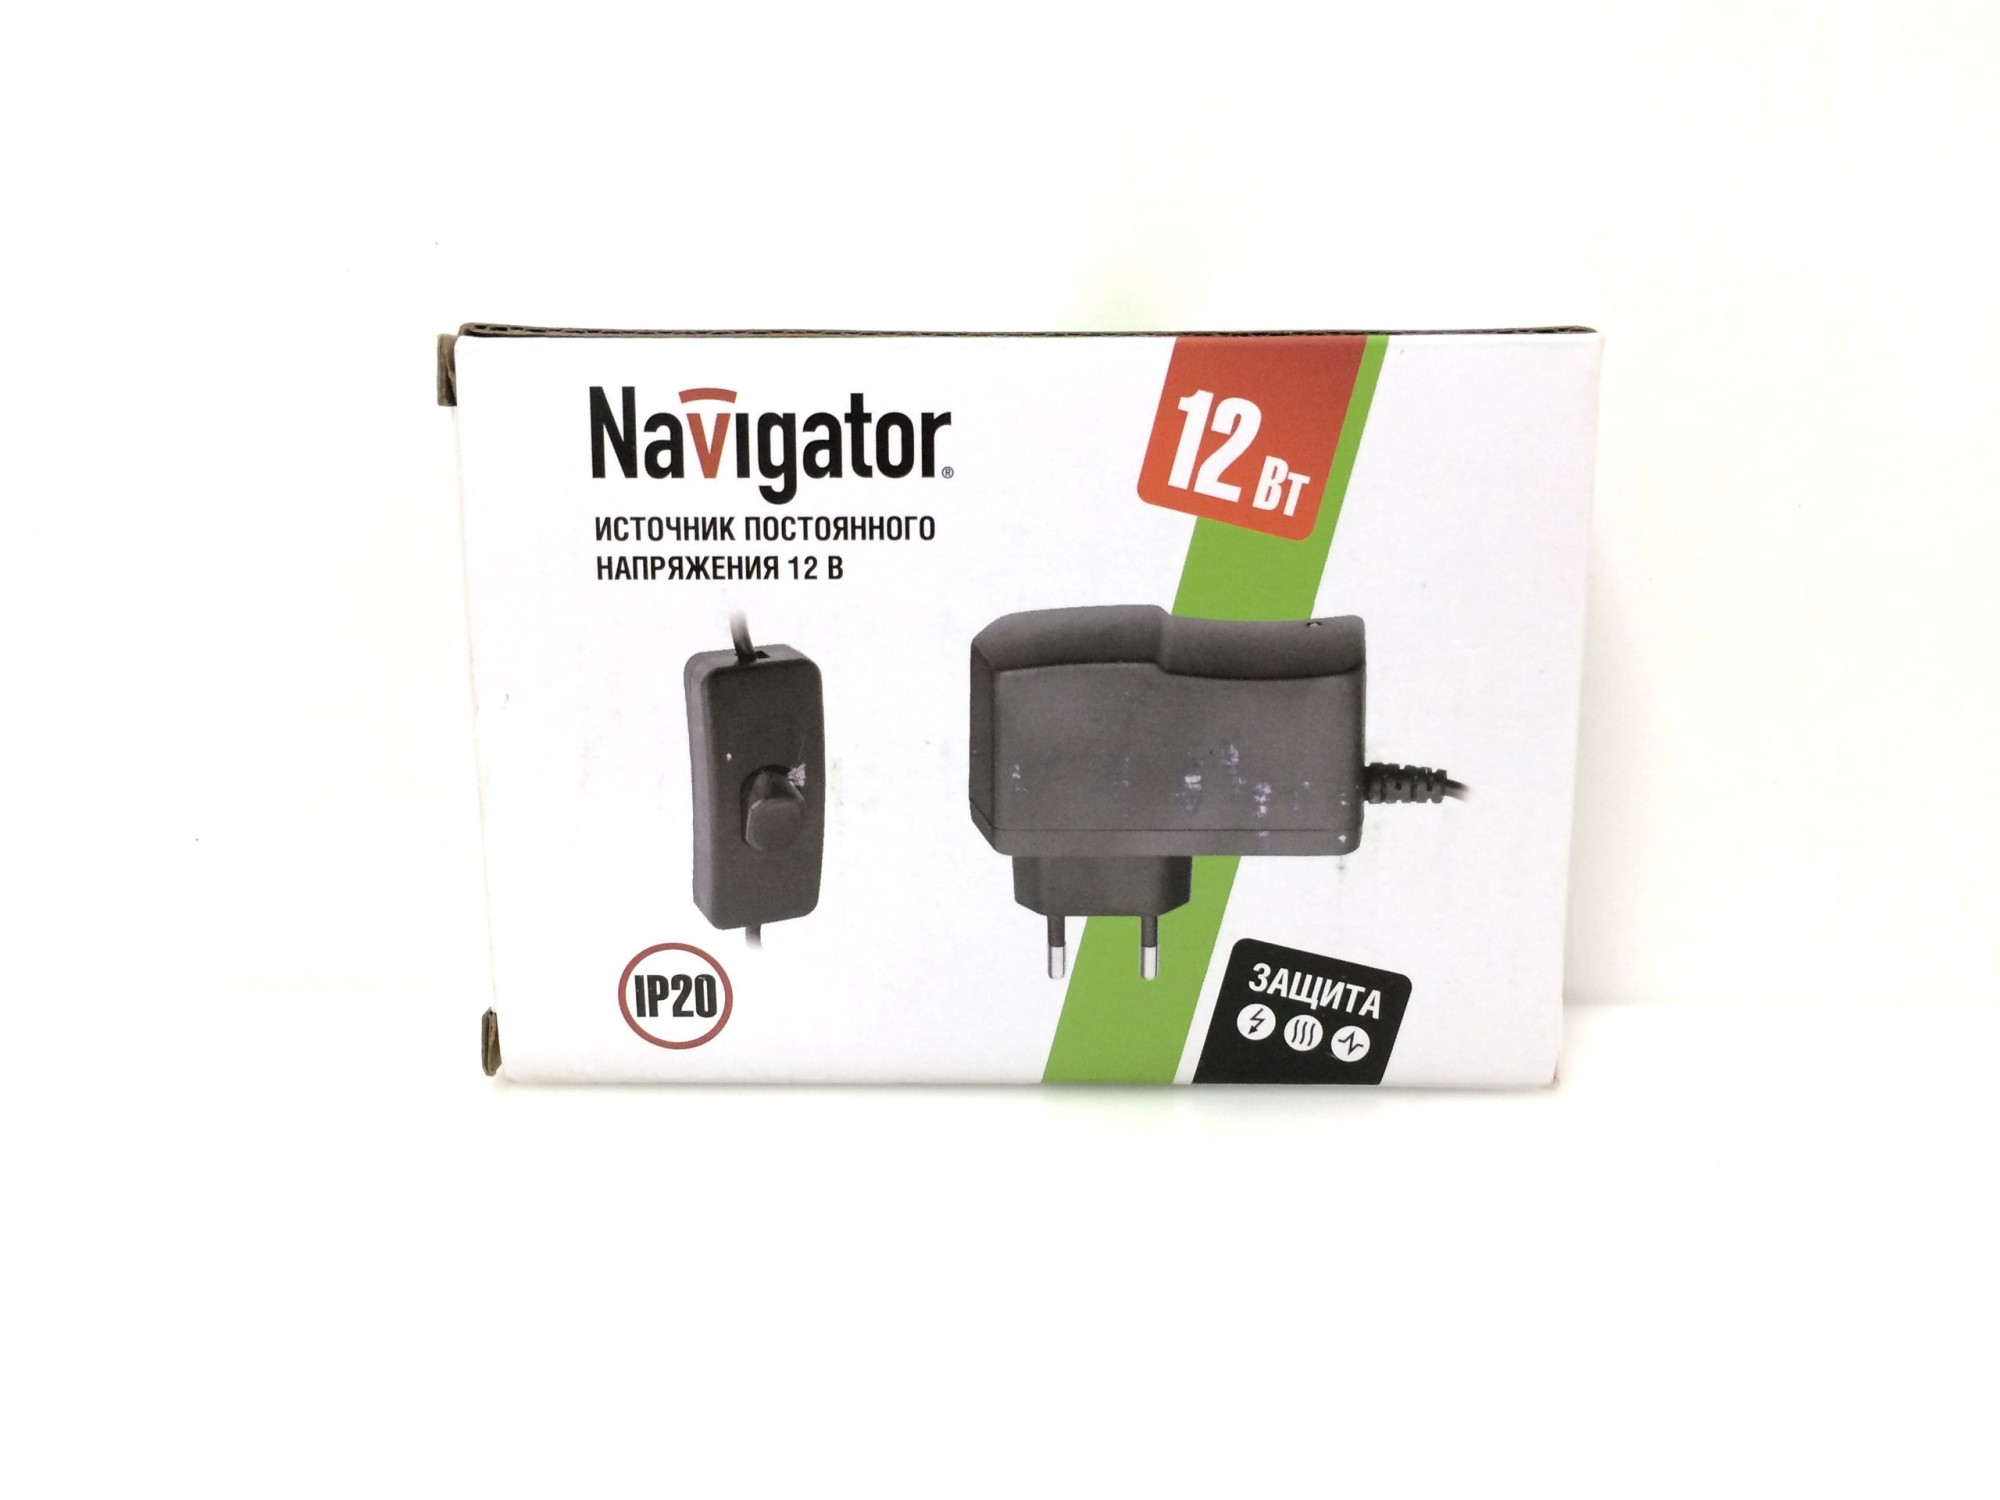 Блок питания Navigator 12В 1А с выключателем